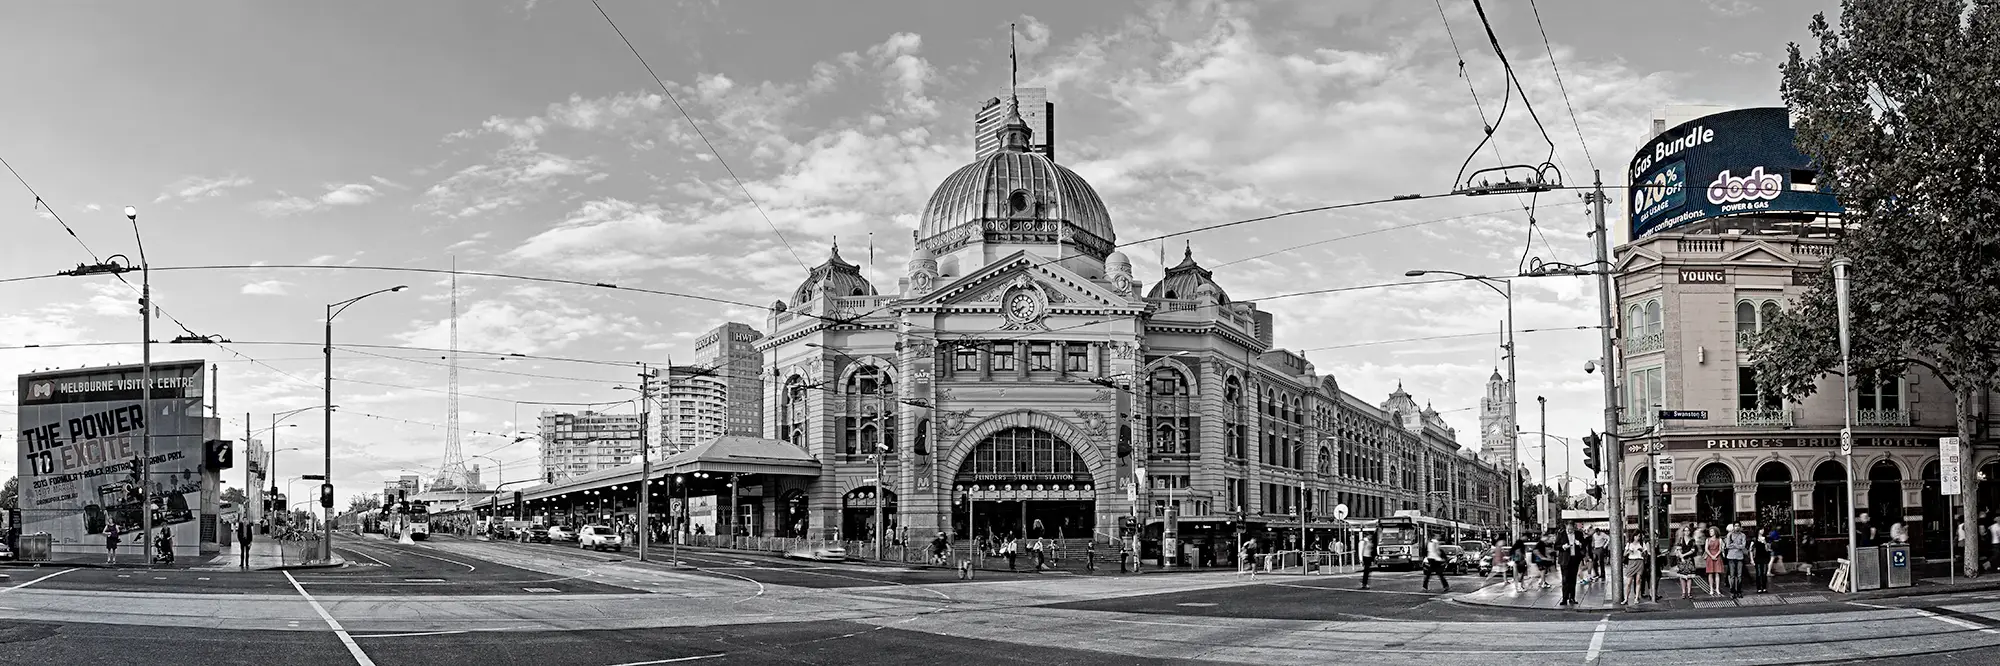 Flinders Street Station Landscape Photos